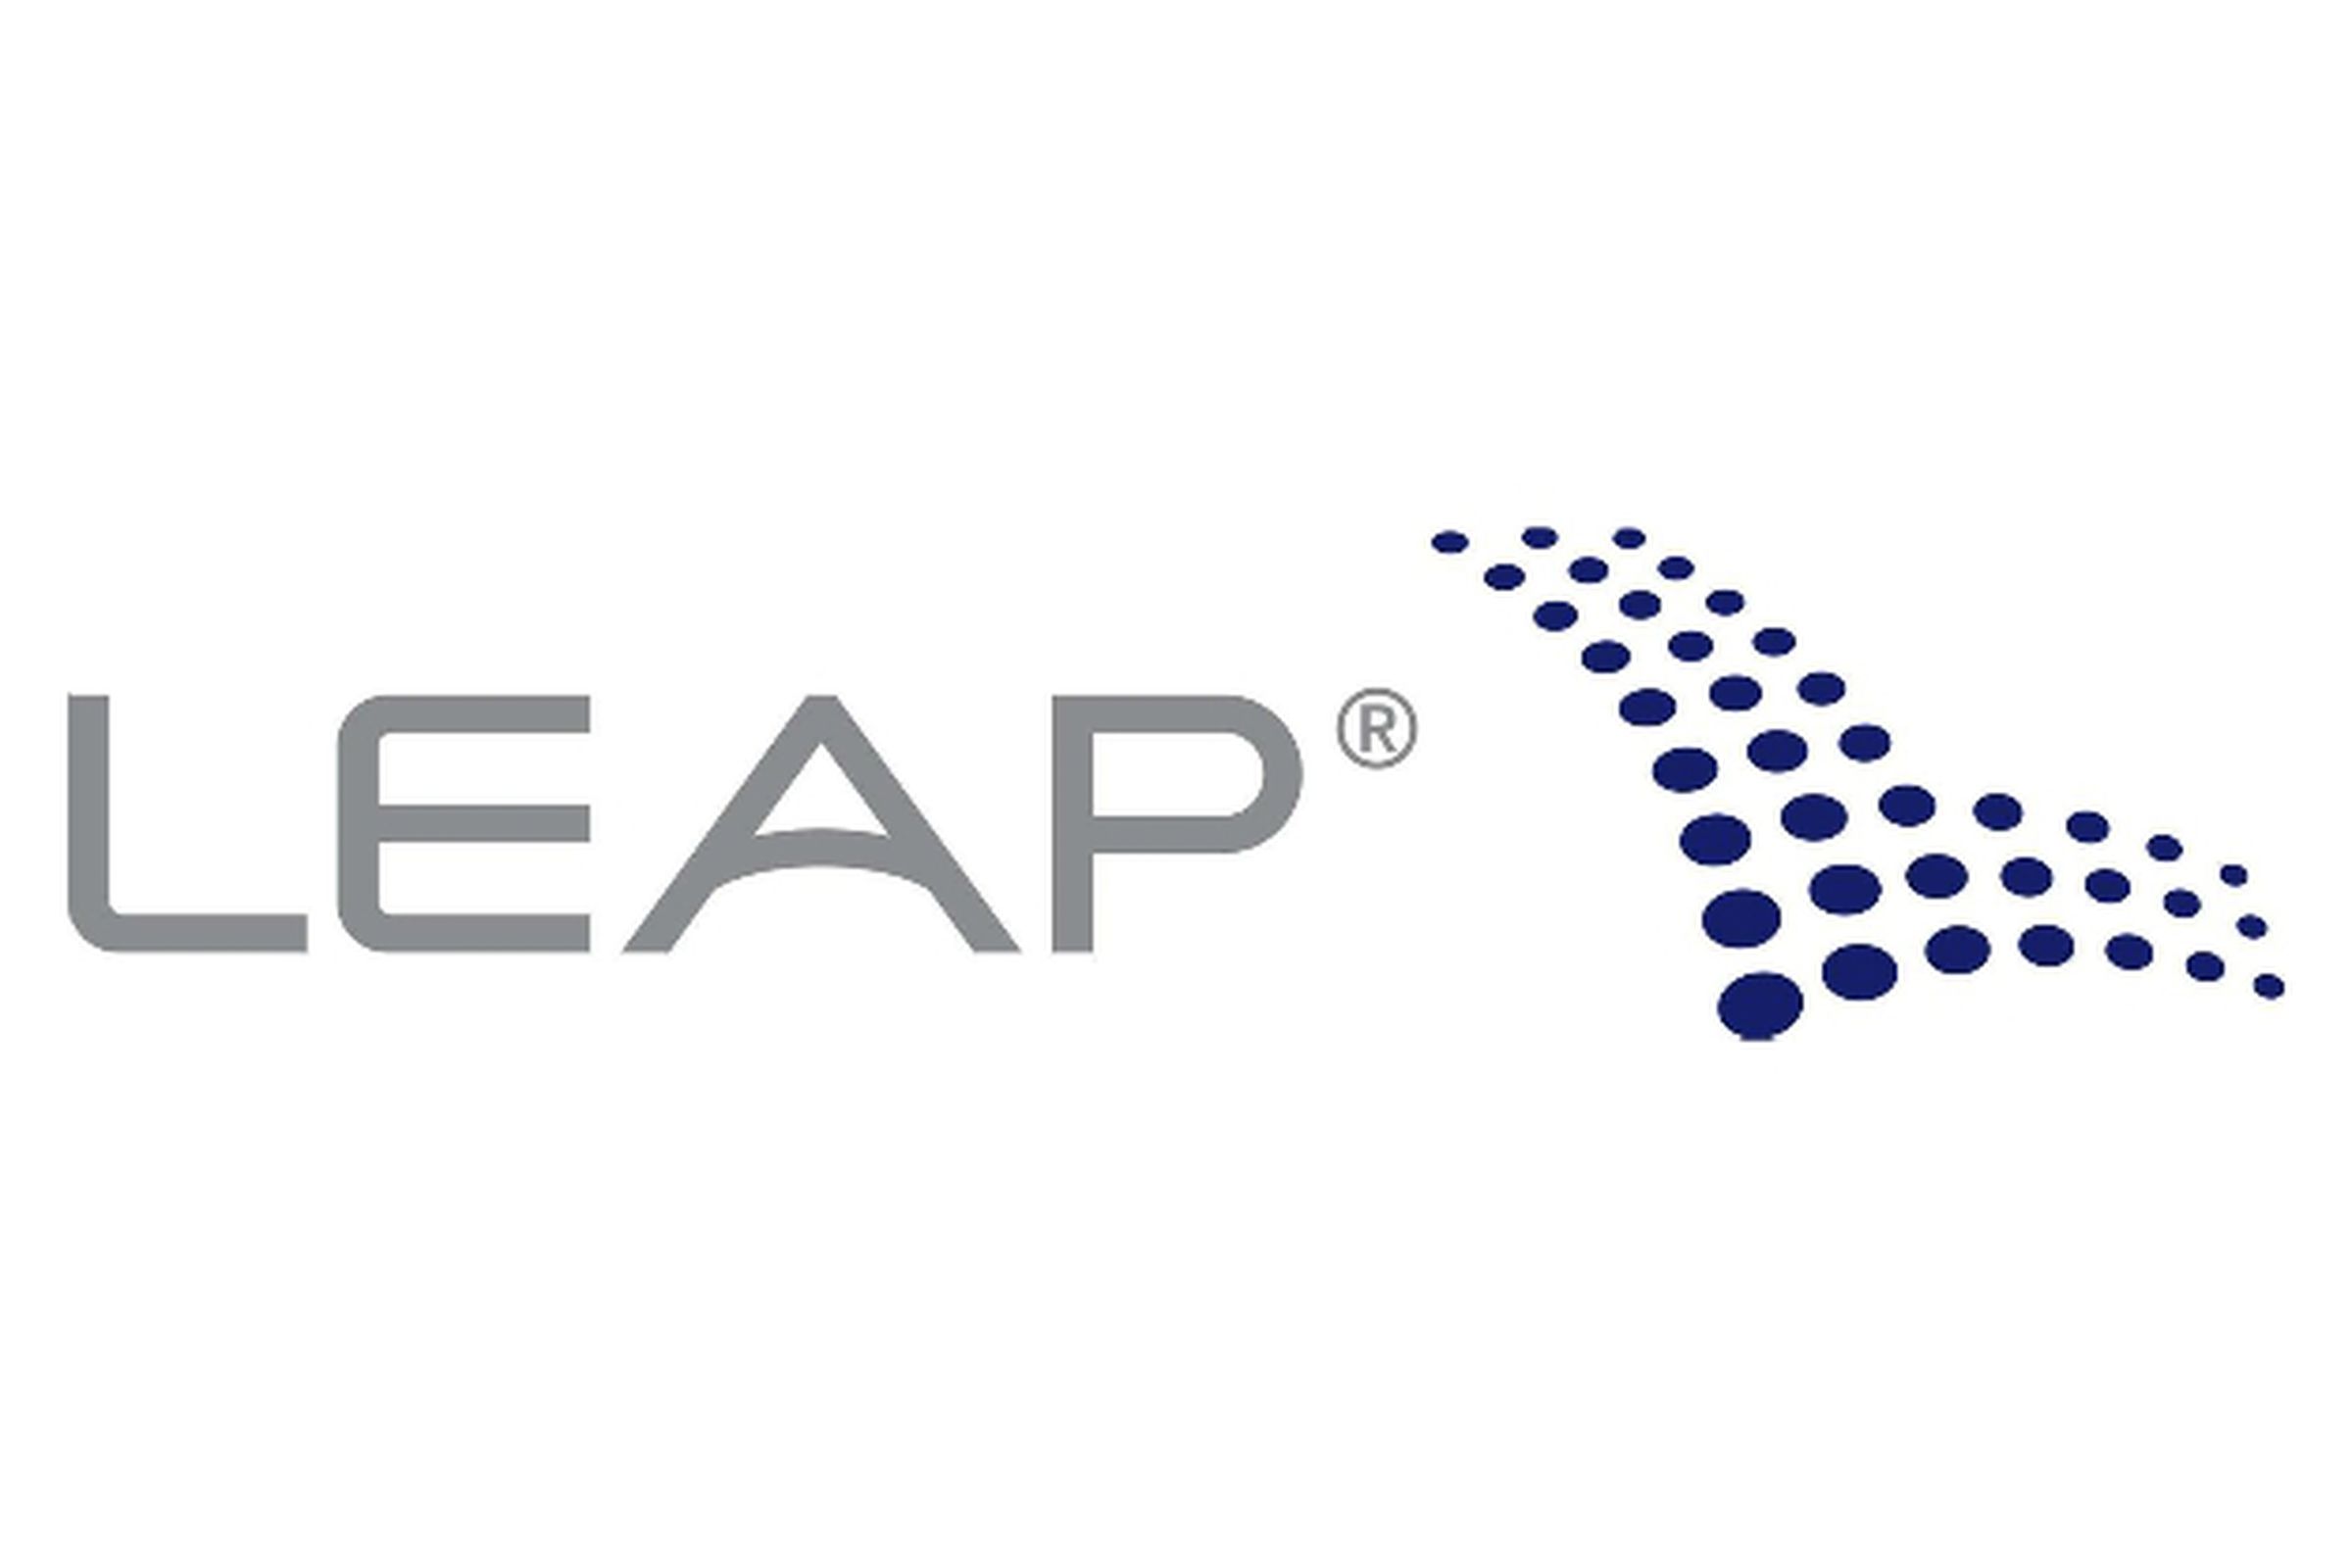 Leap Wireless logo